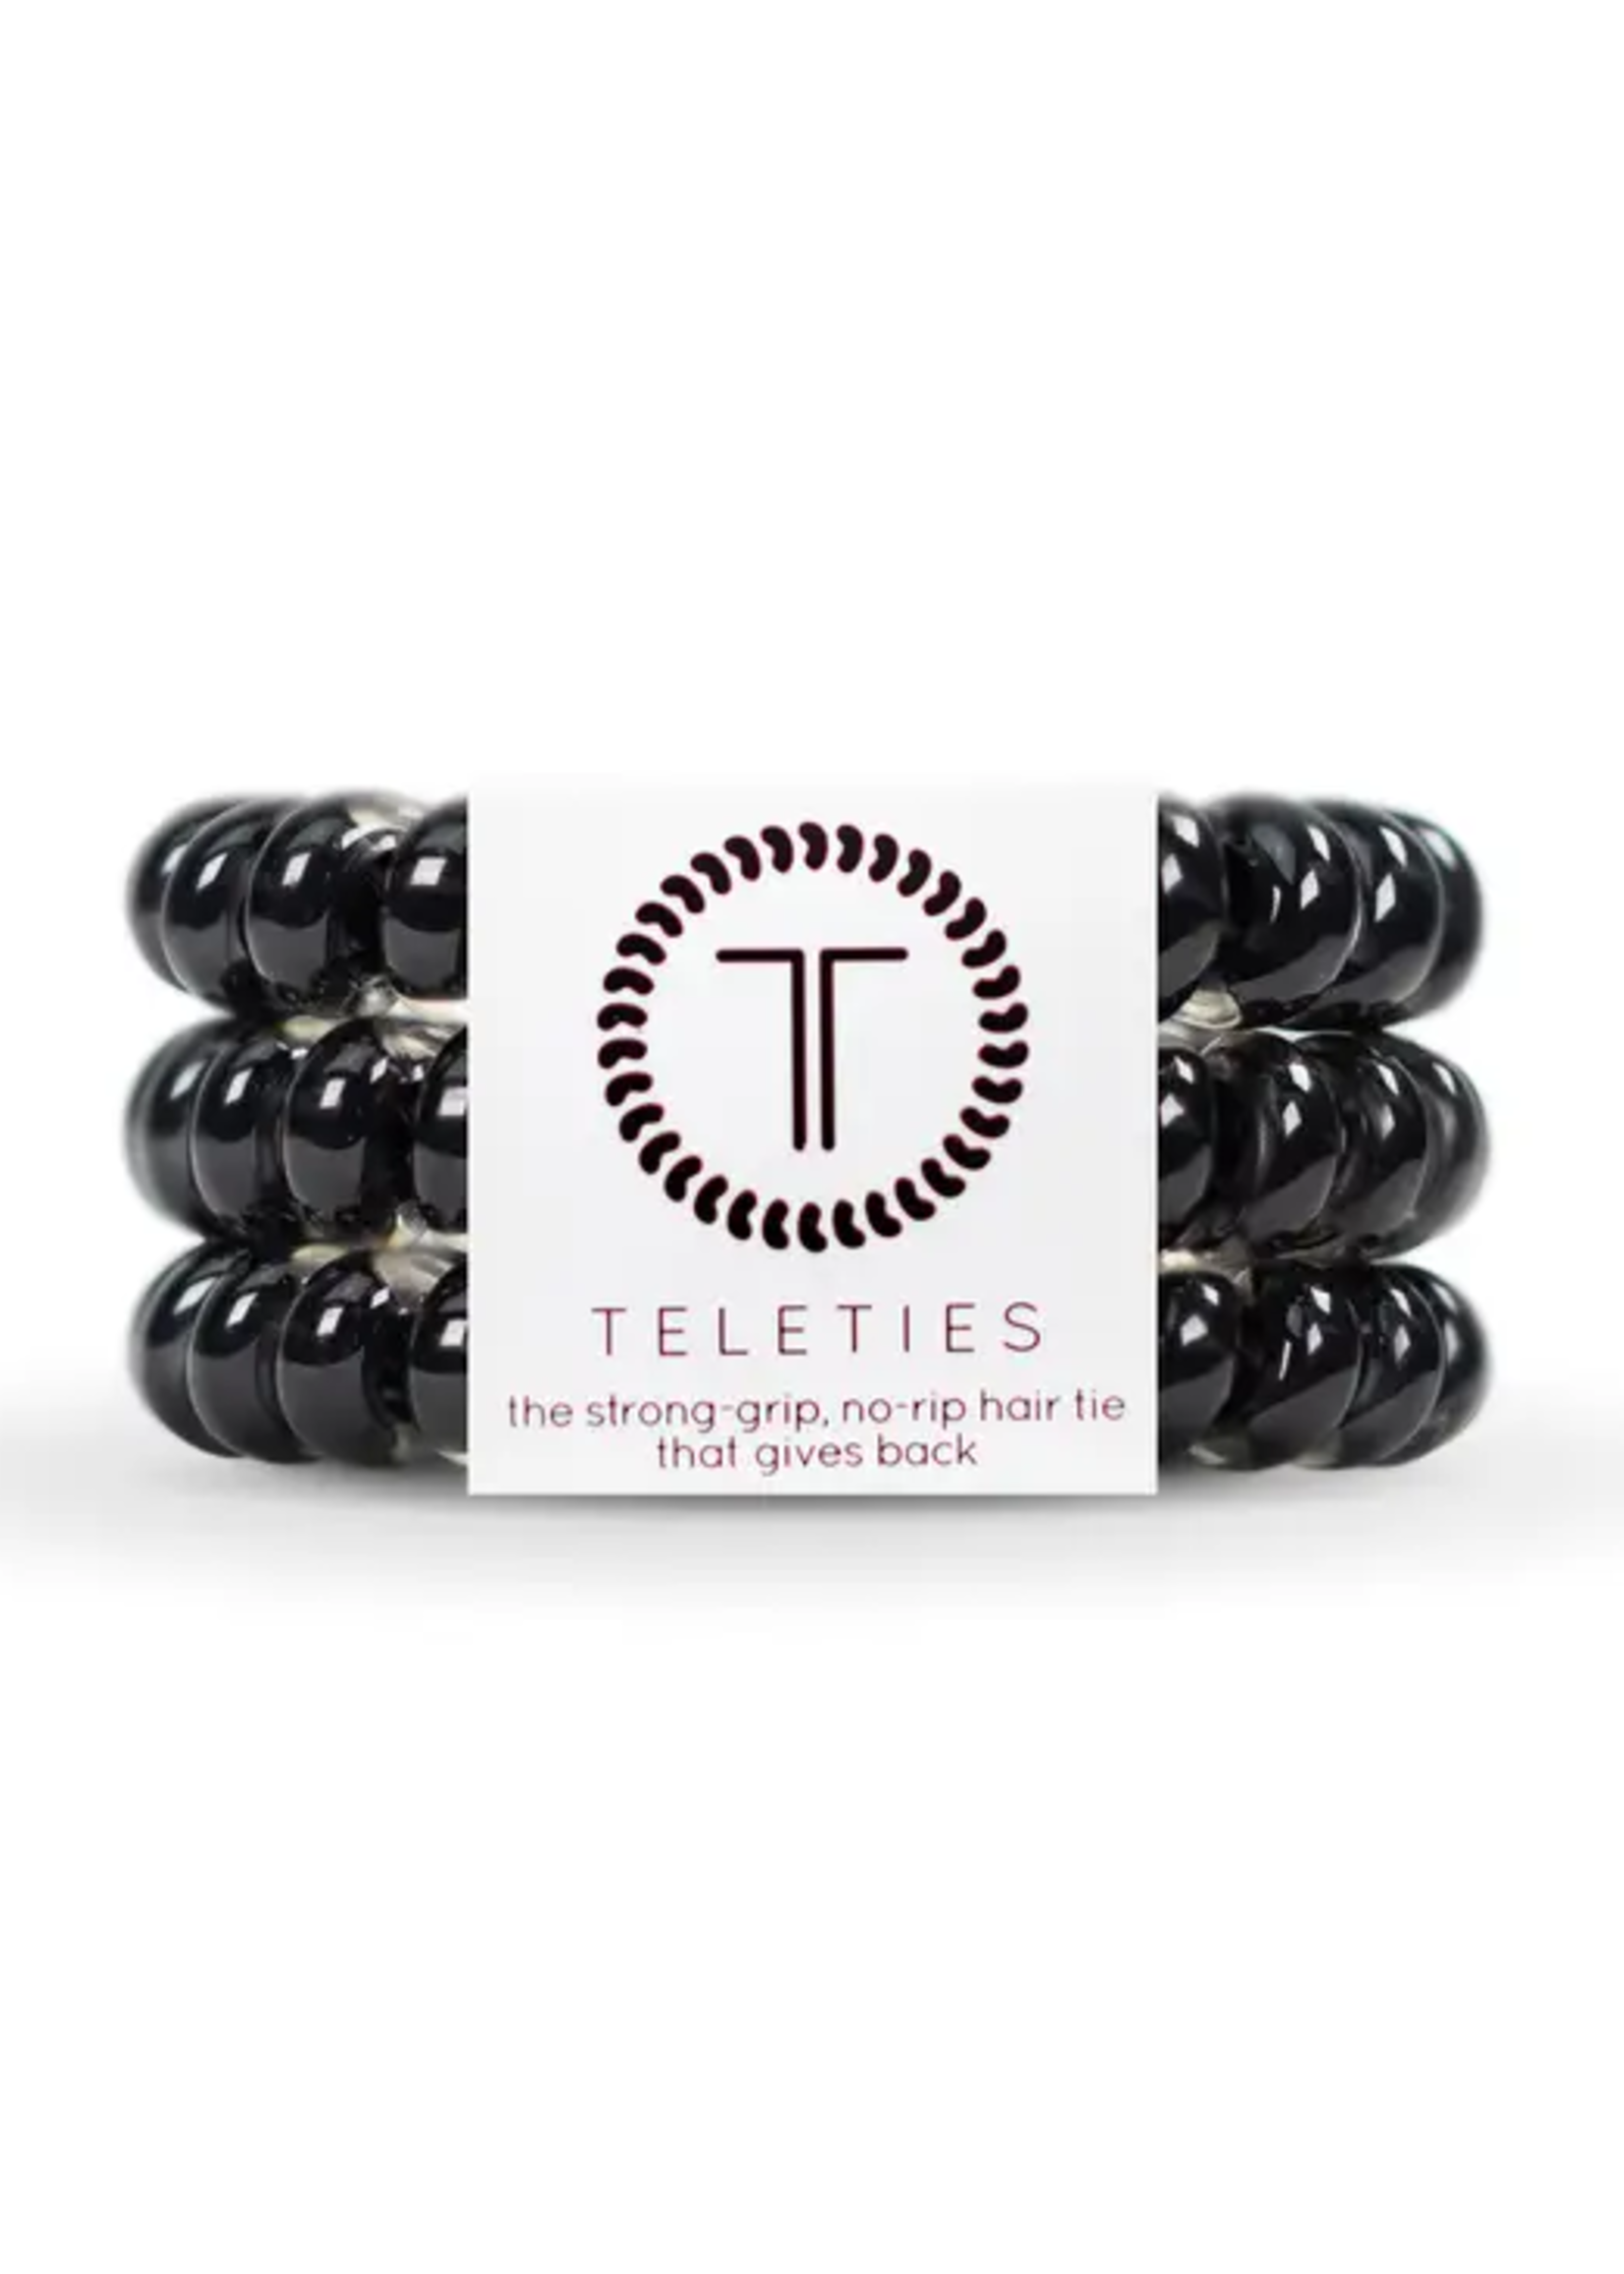 teleties Jet Black Hair Tie